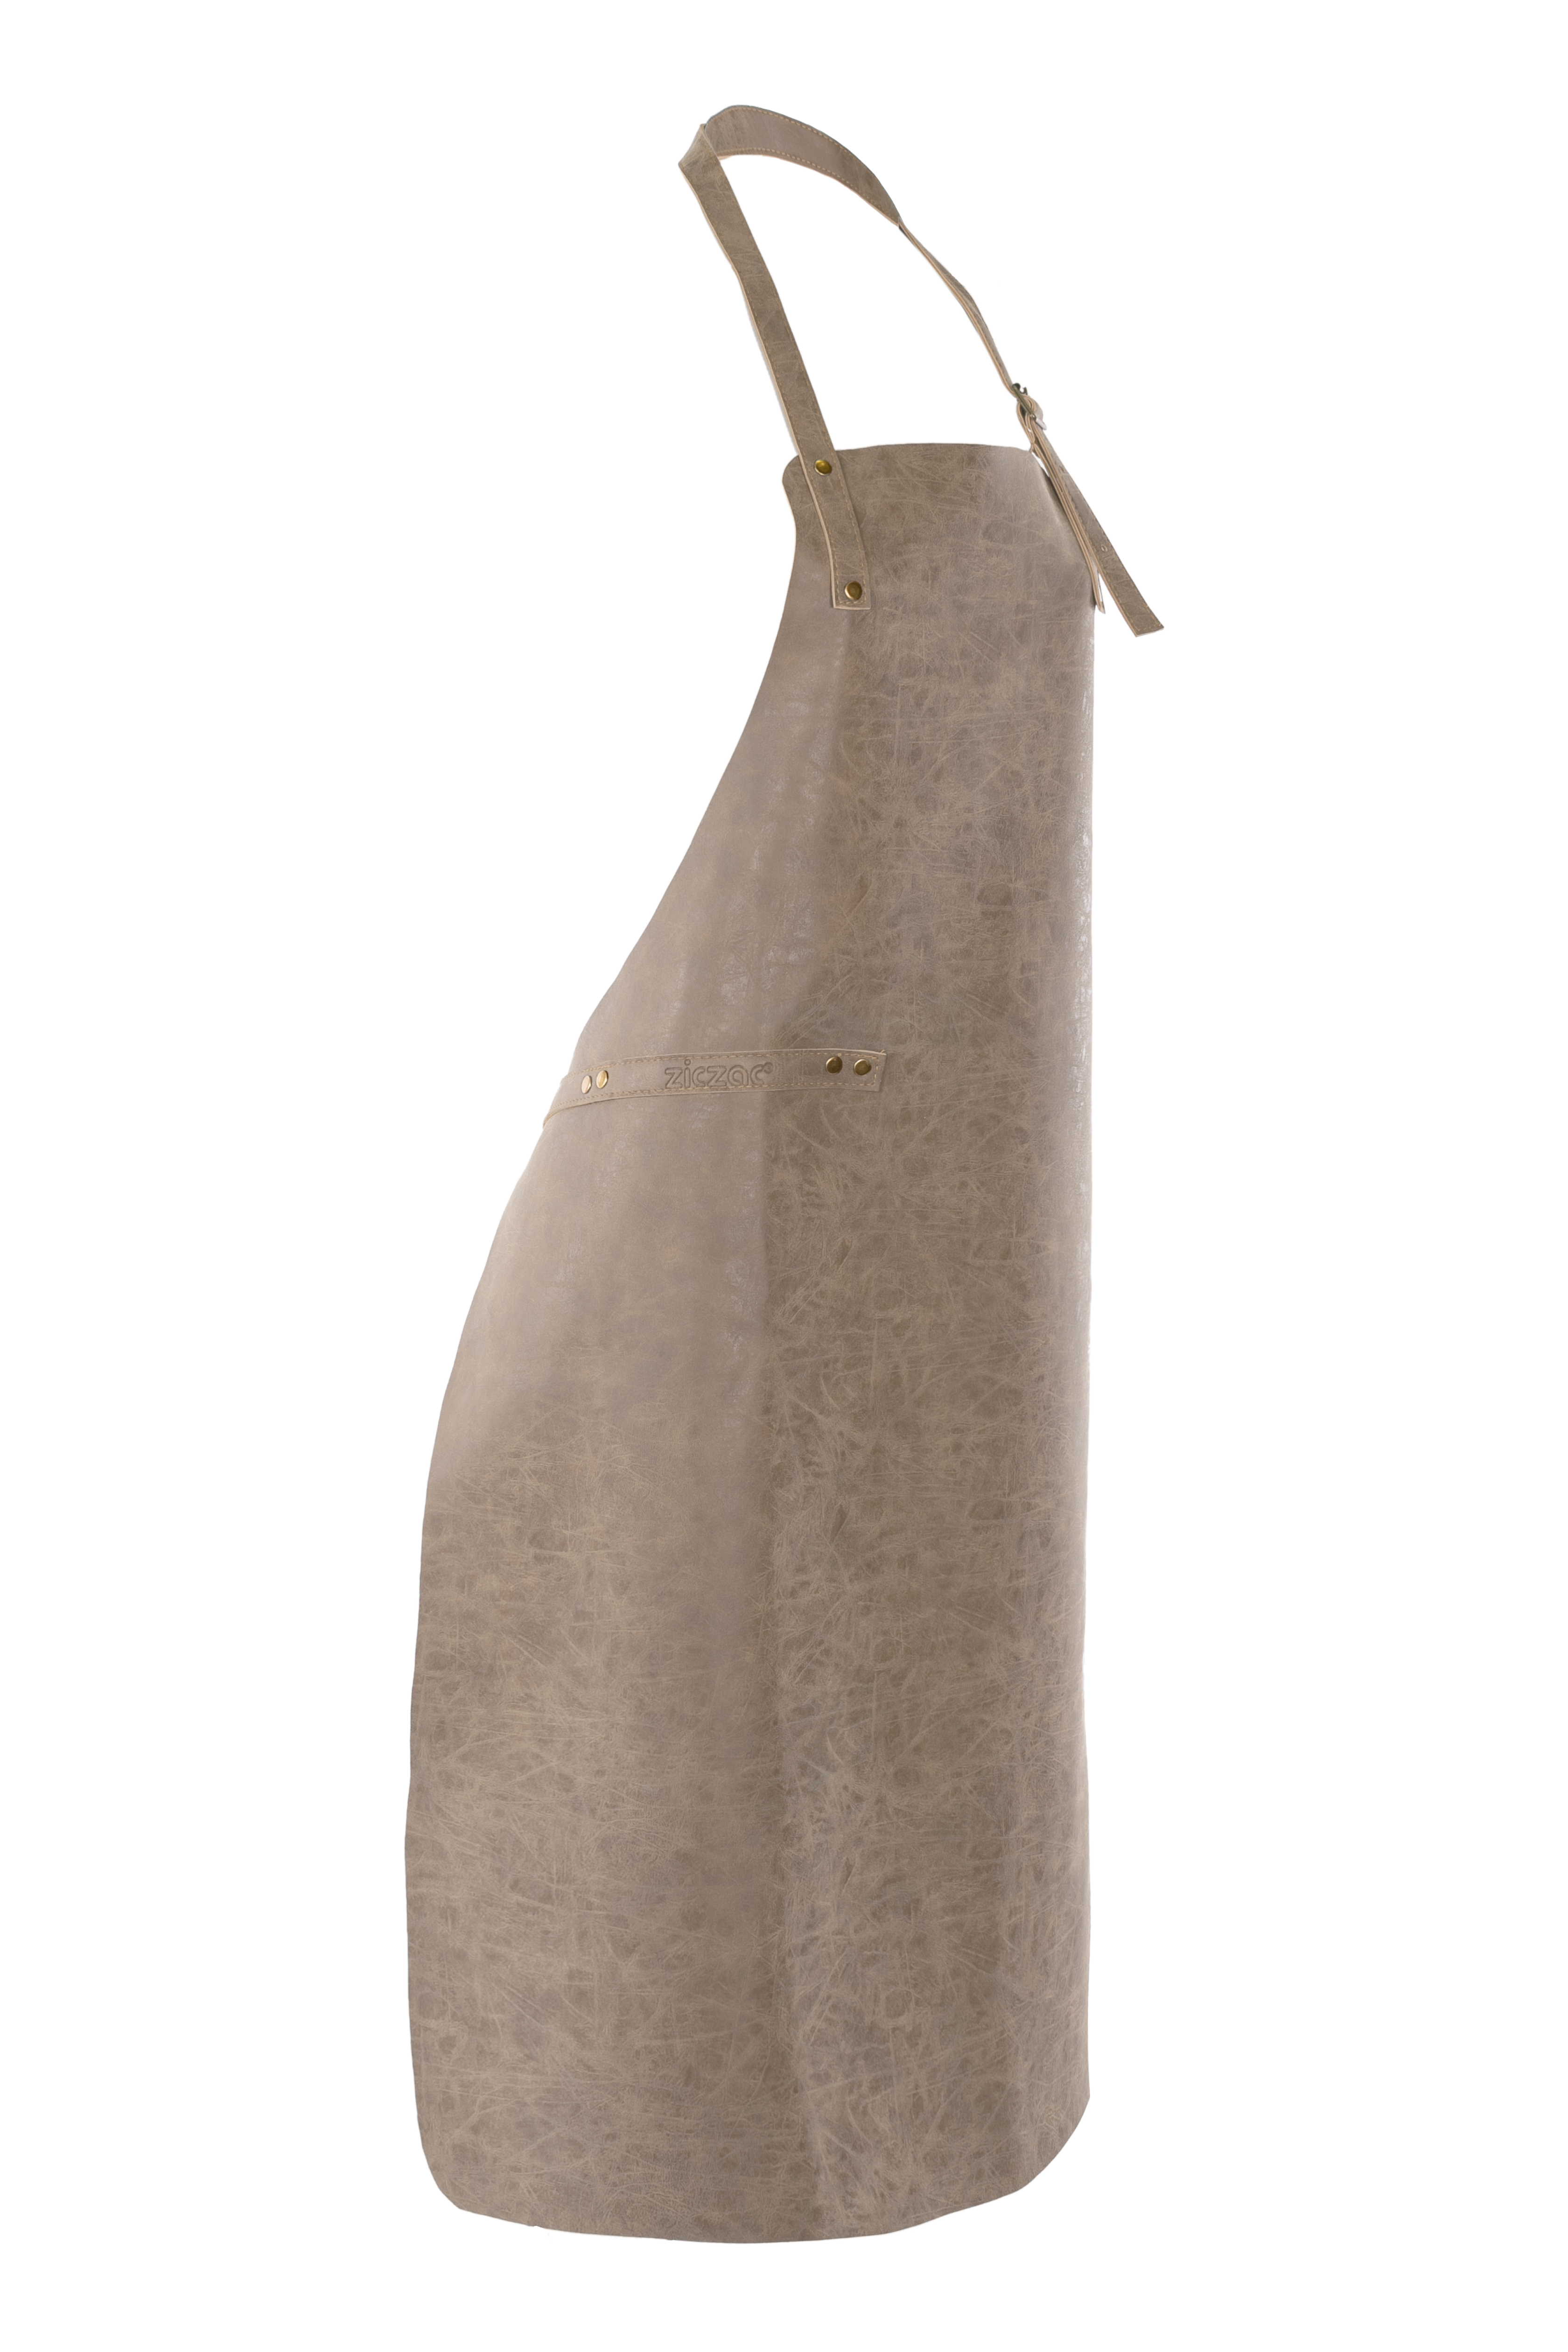 Apron TRUMAN (Towel loop - no pocket - opt. Accessory bag), 70x90 cm, taupe